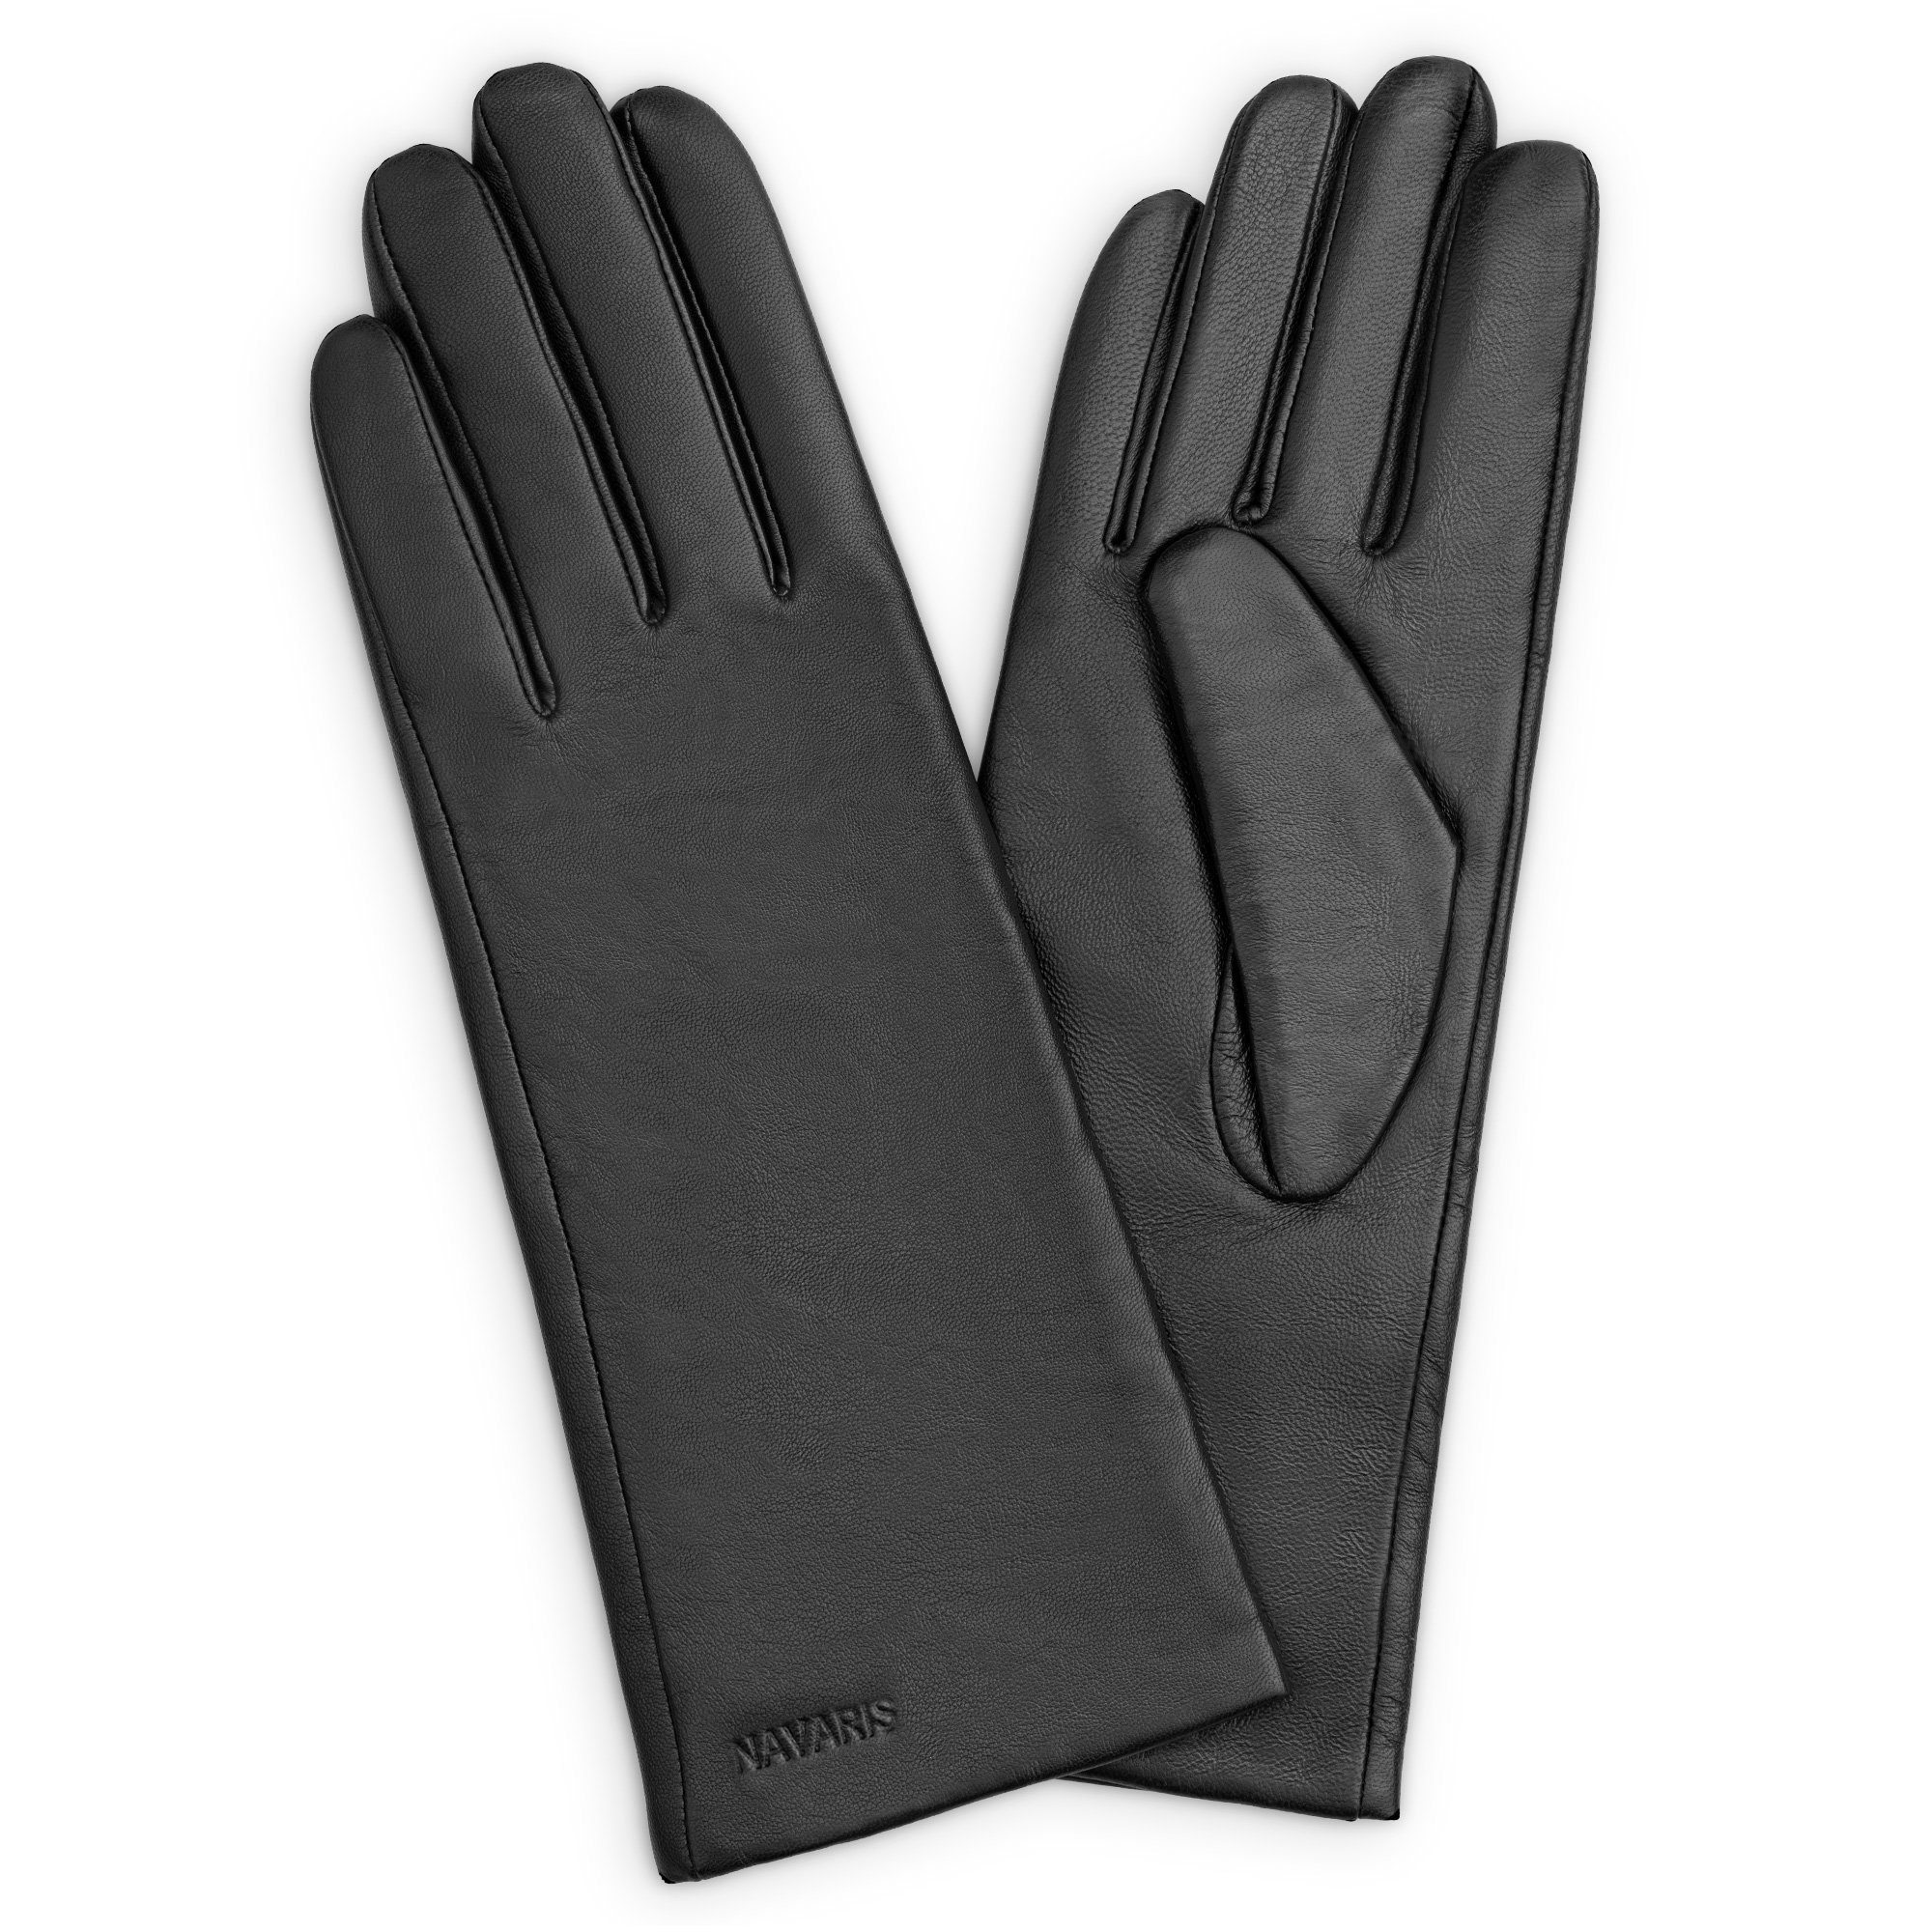 Kaschmir - Navaris S - Nappa Mix Damen Touchscreen Handschuhe Lammleder - Lederhandschuhe